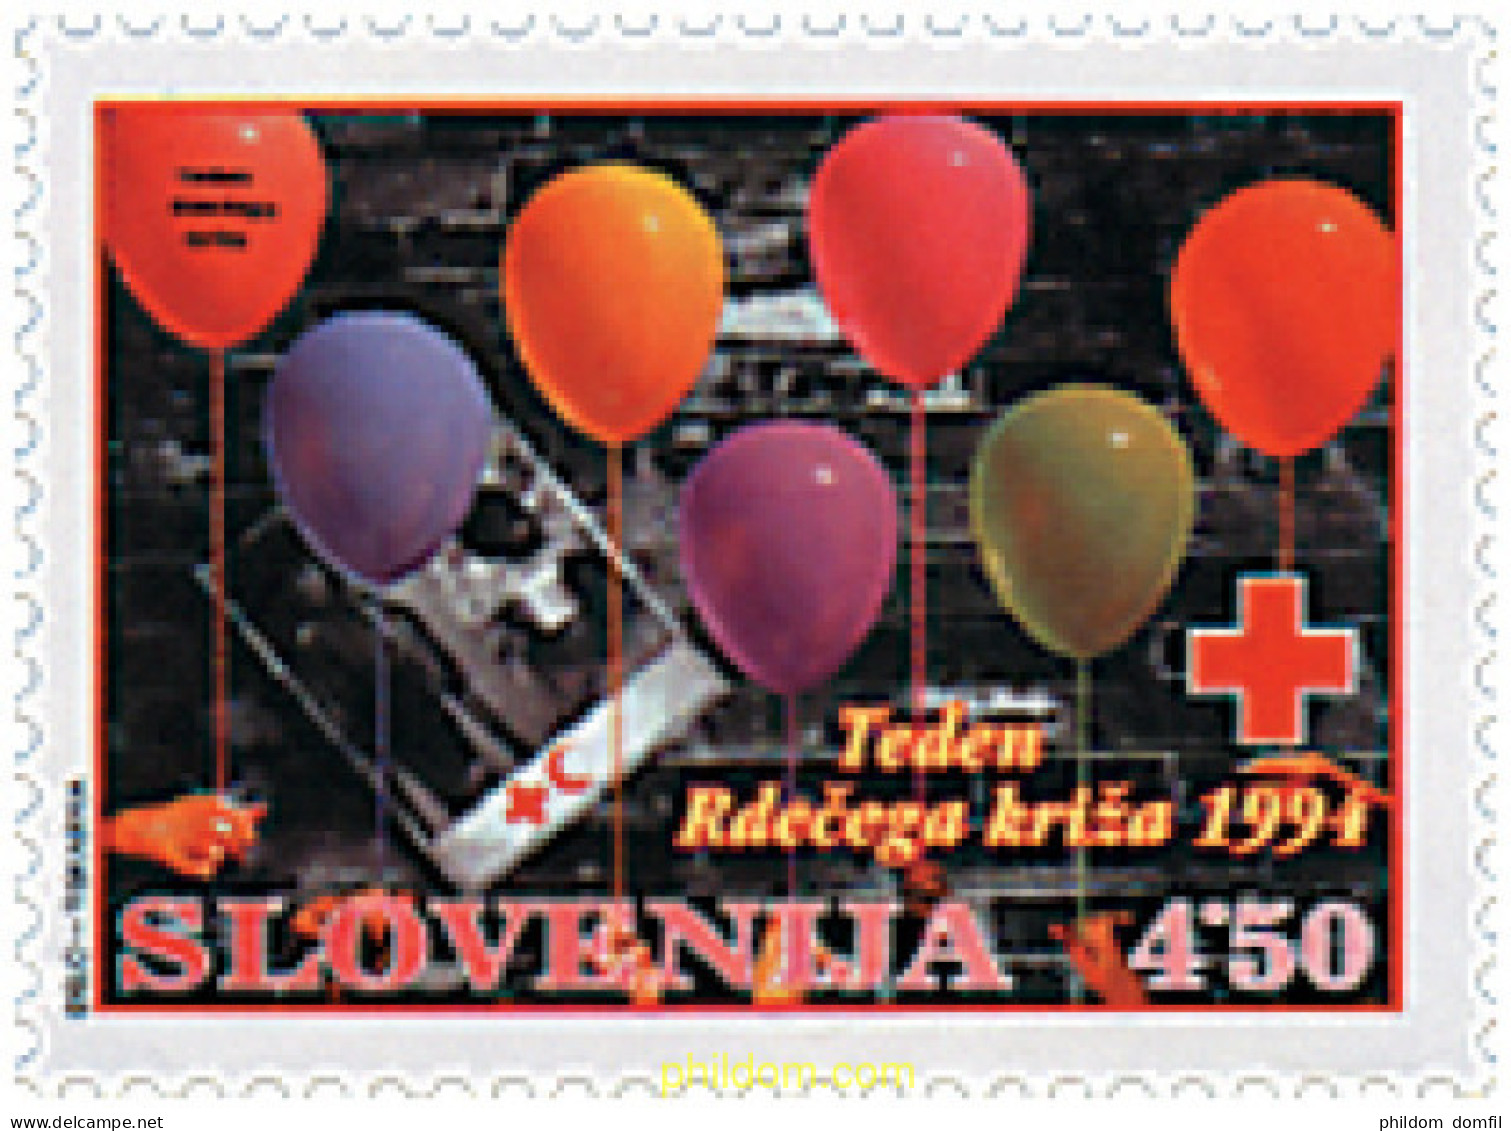 209058 MNH ESLOVENIA 1994 CRUZ ROJA - Slowenien